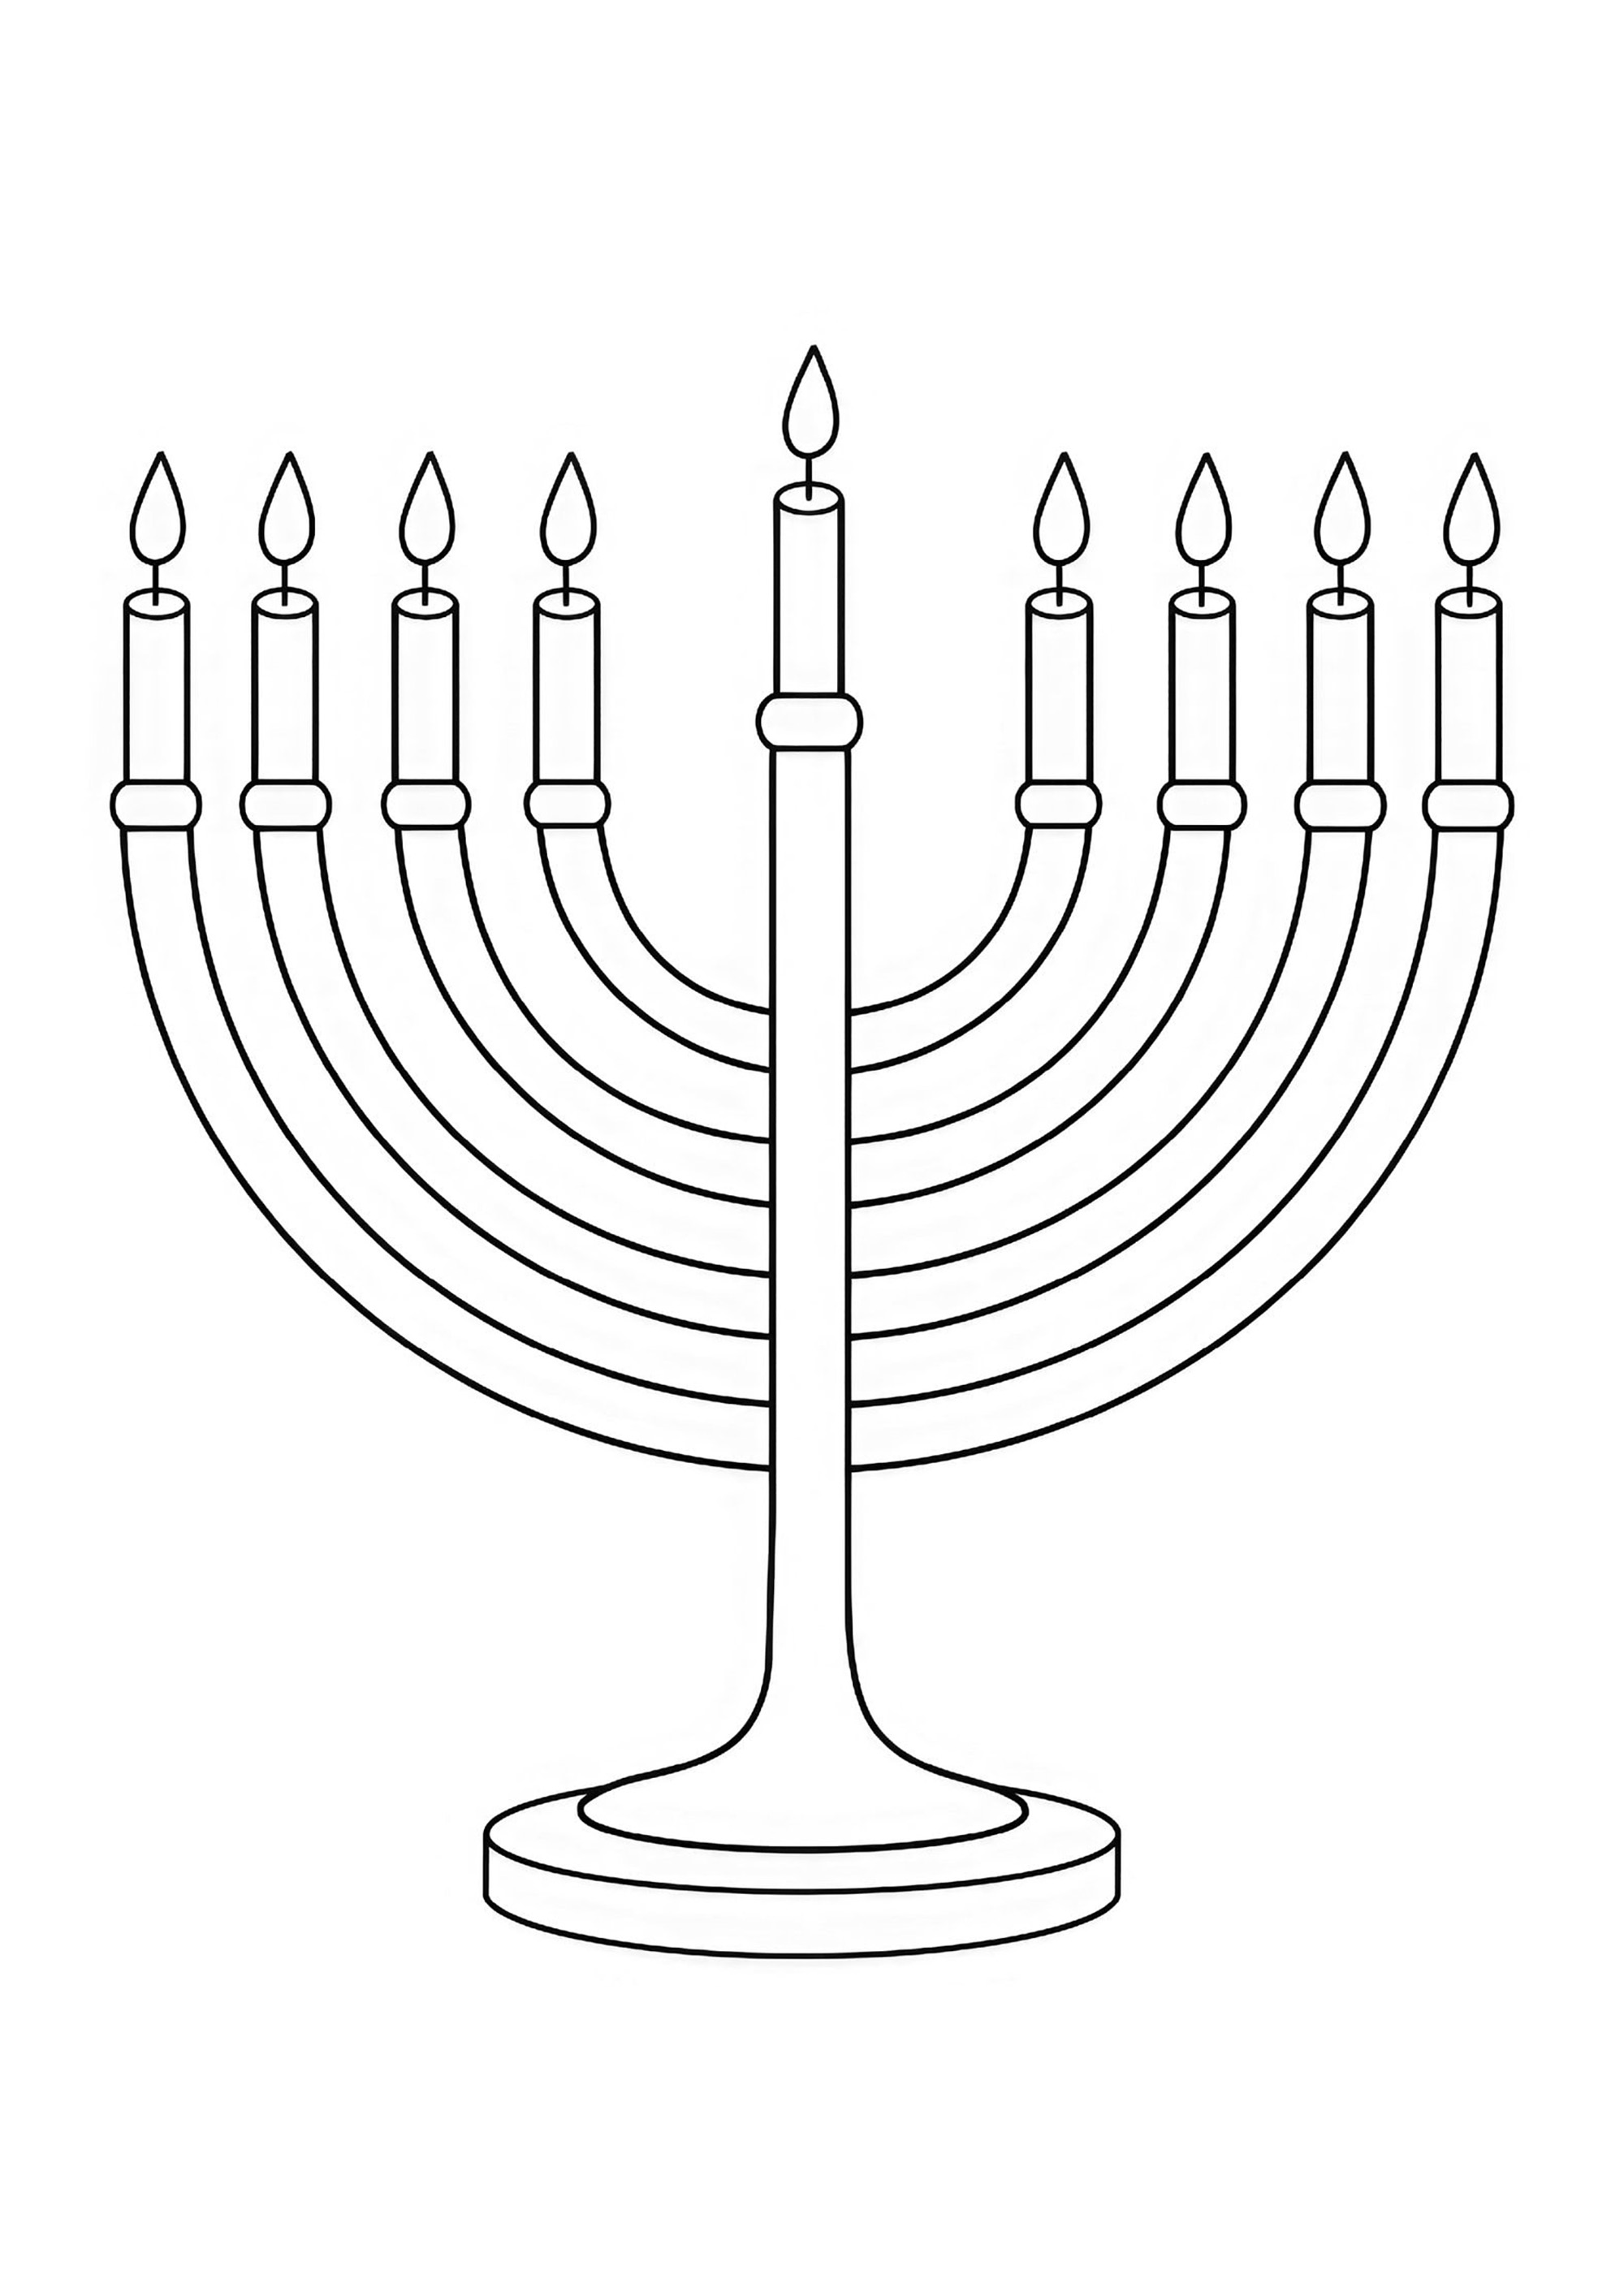 Menorah de colores. La Menorah es un candelabro de siete brazos utilizado por los judíos a partir del siglo VIII.